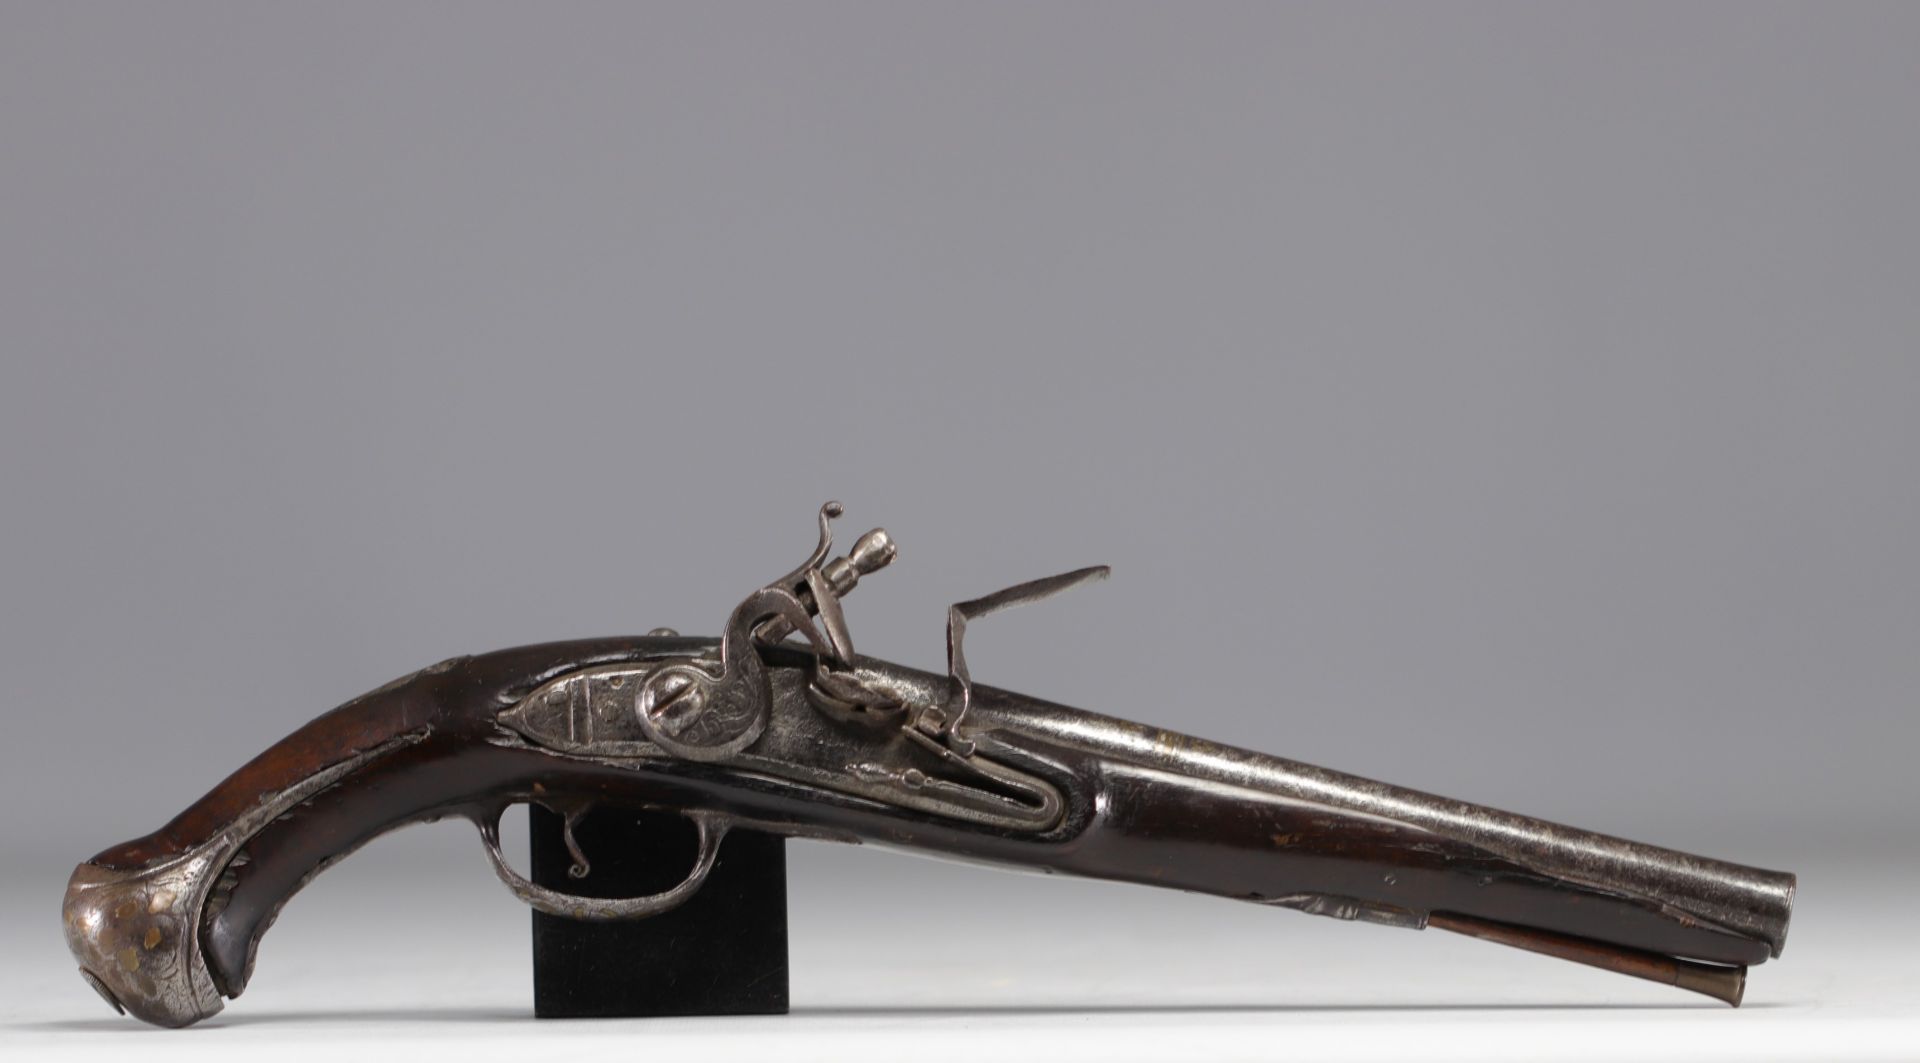 France - Flintlock pistol, 18th century.